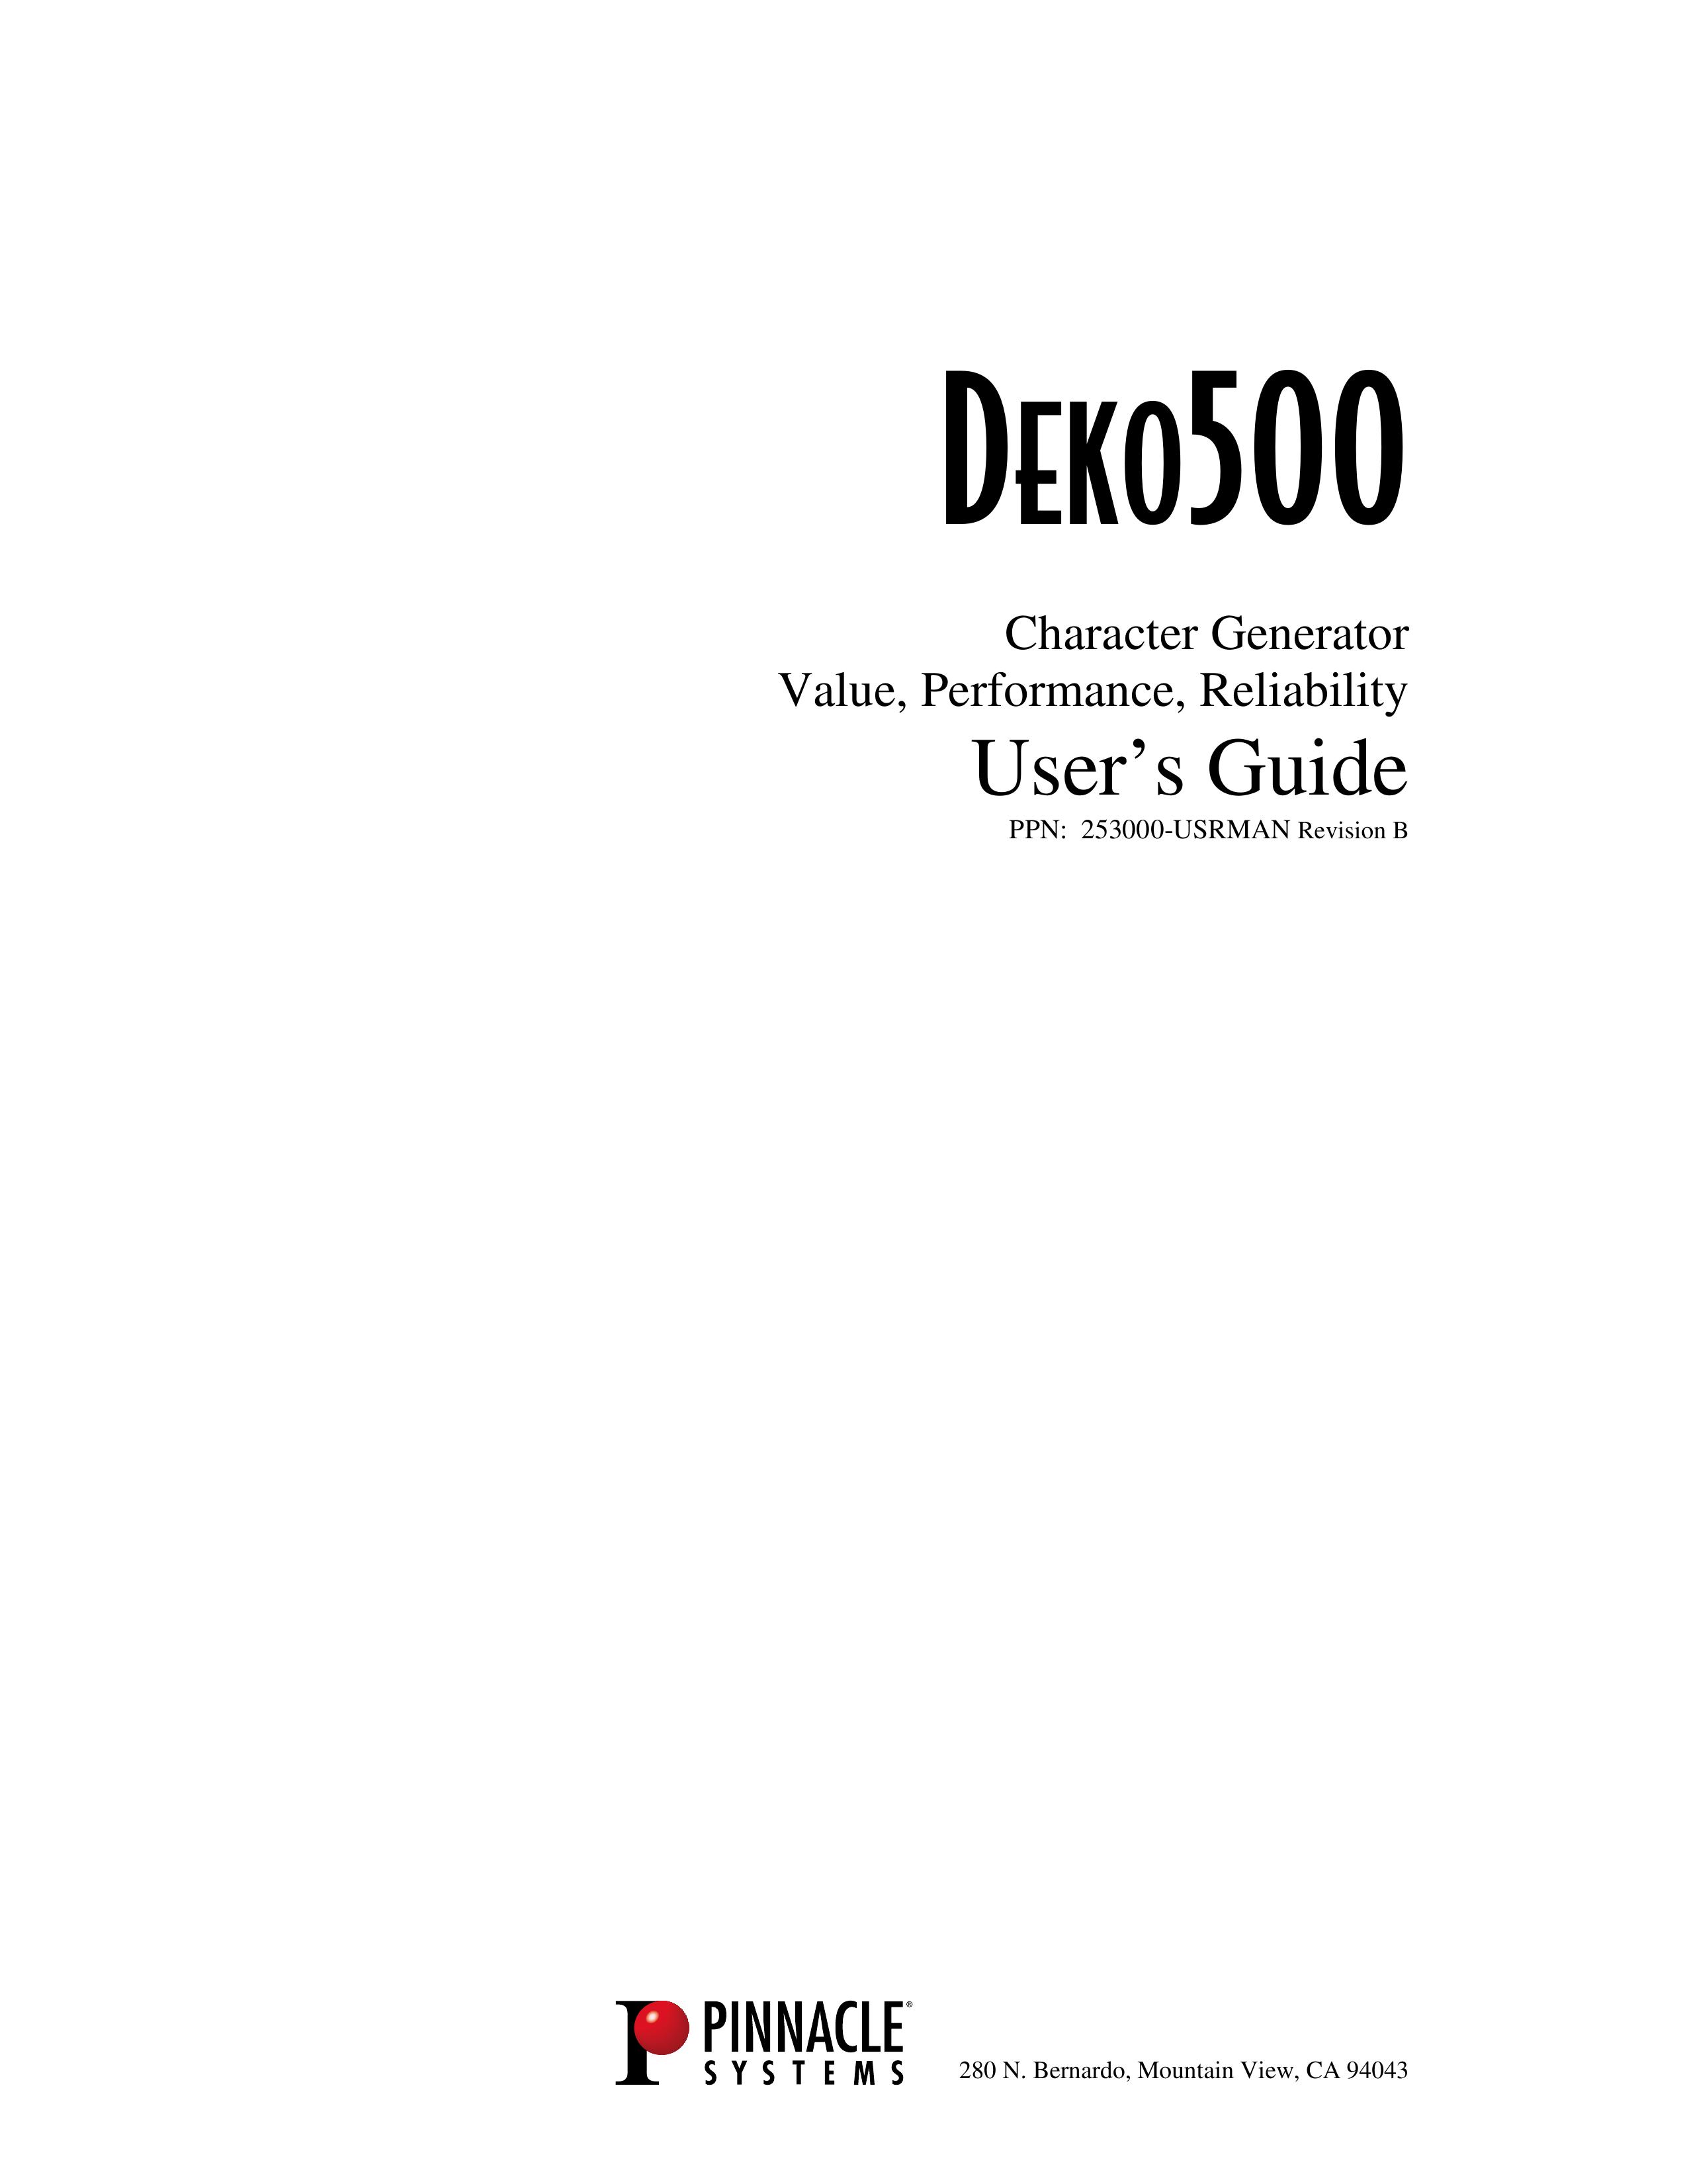 Pinnacle Speakers DEKO500 Portable Generator User Manual